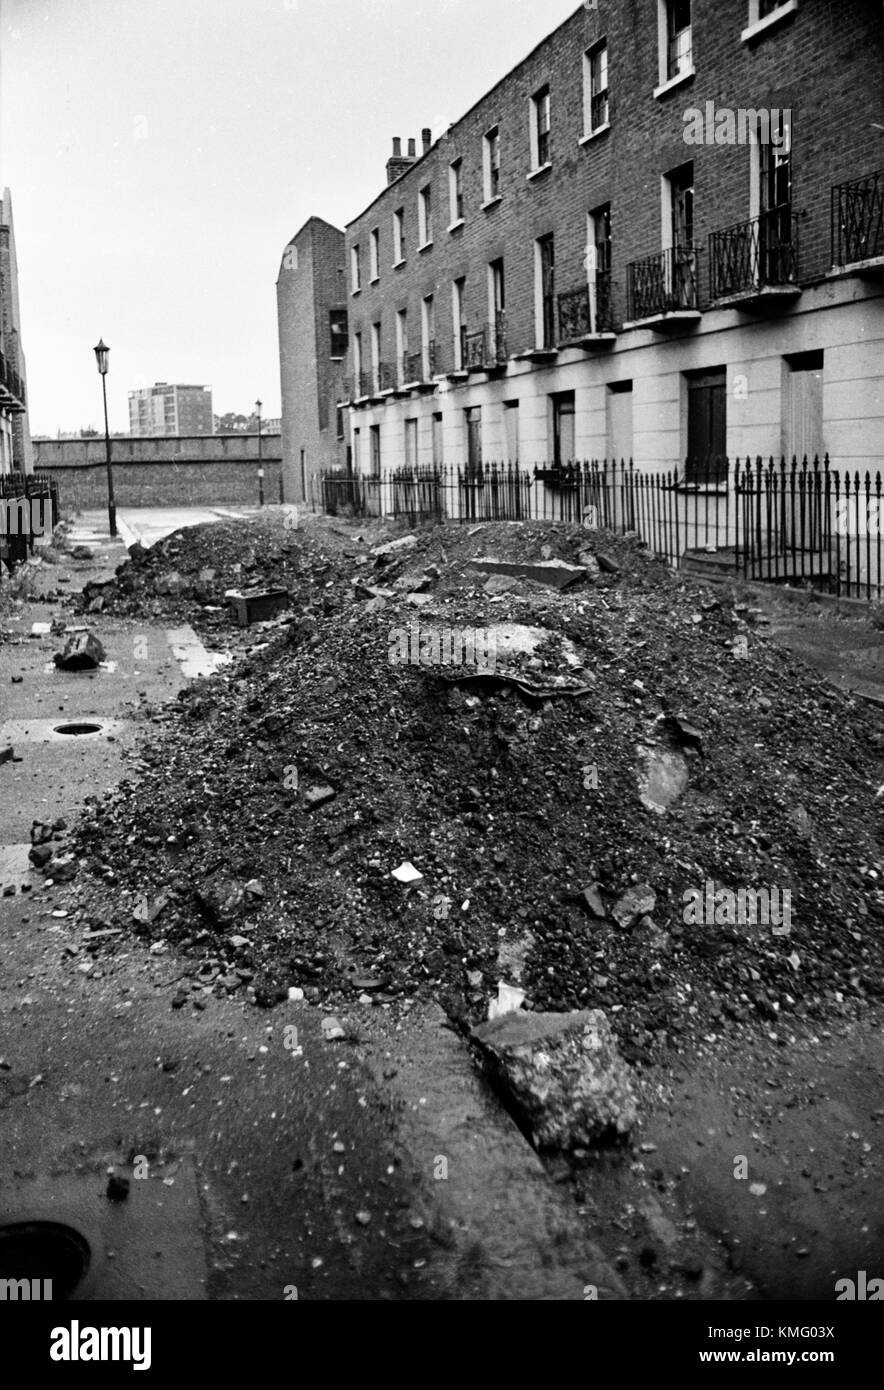 Slums 1960s UK Londra, edifici condannano e saranno demoliti 1967 Inghilterra. Nessuno vive più qui. HOMER SYKES Foto Stock